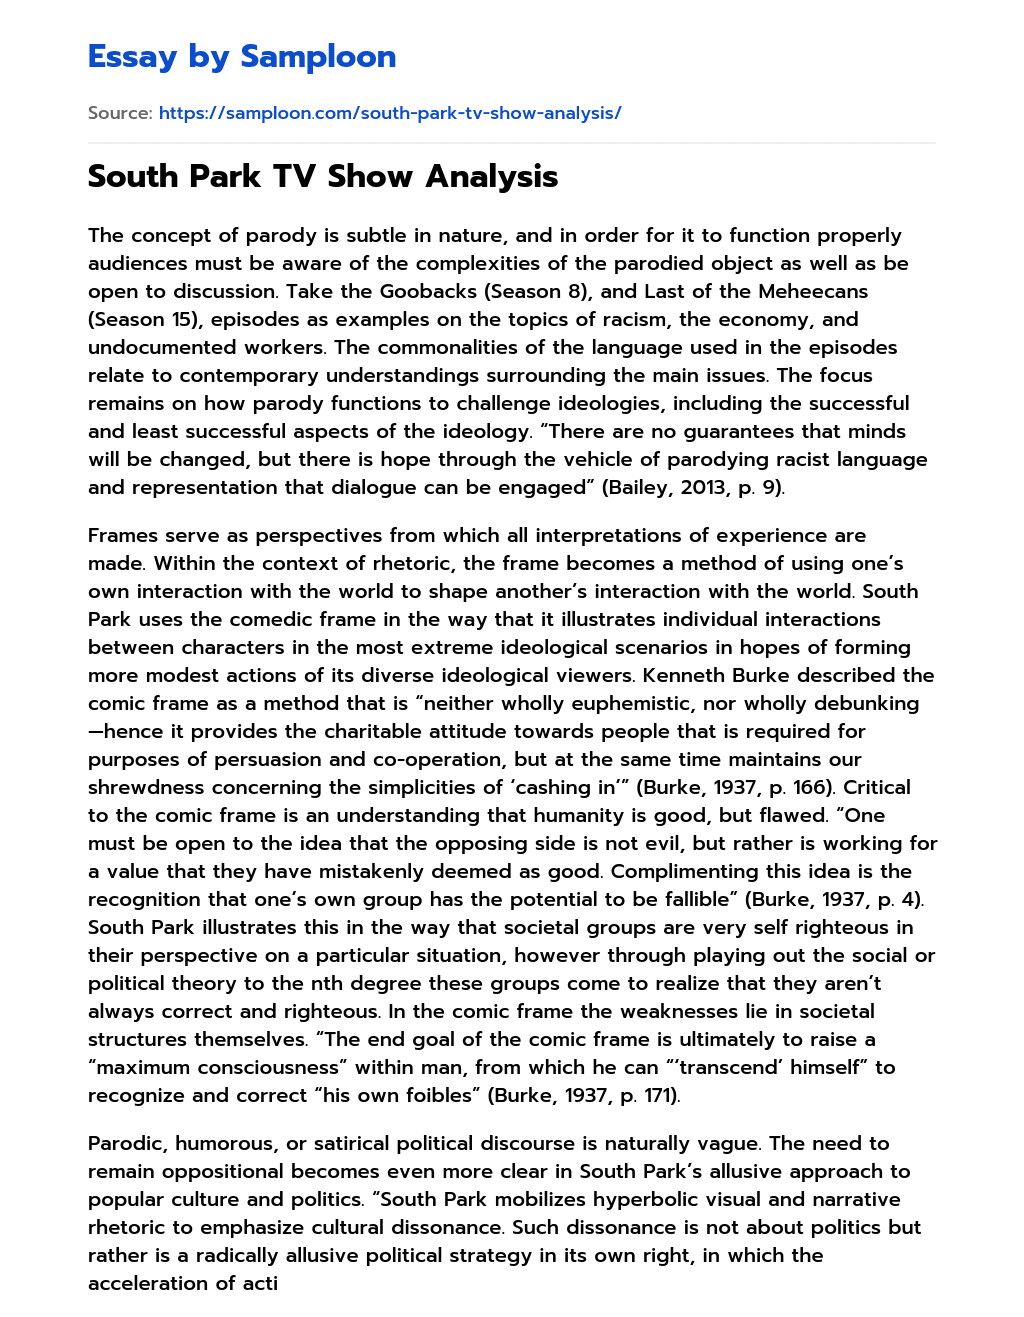 South Park TV Show Analysis essay